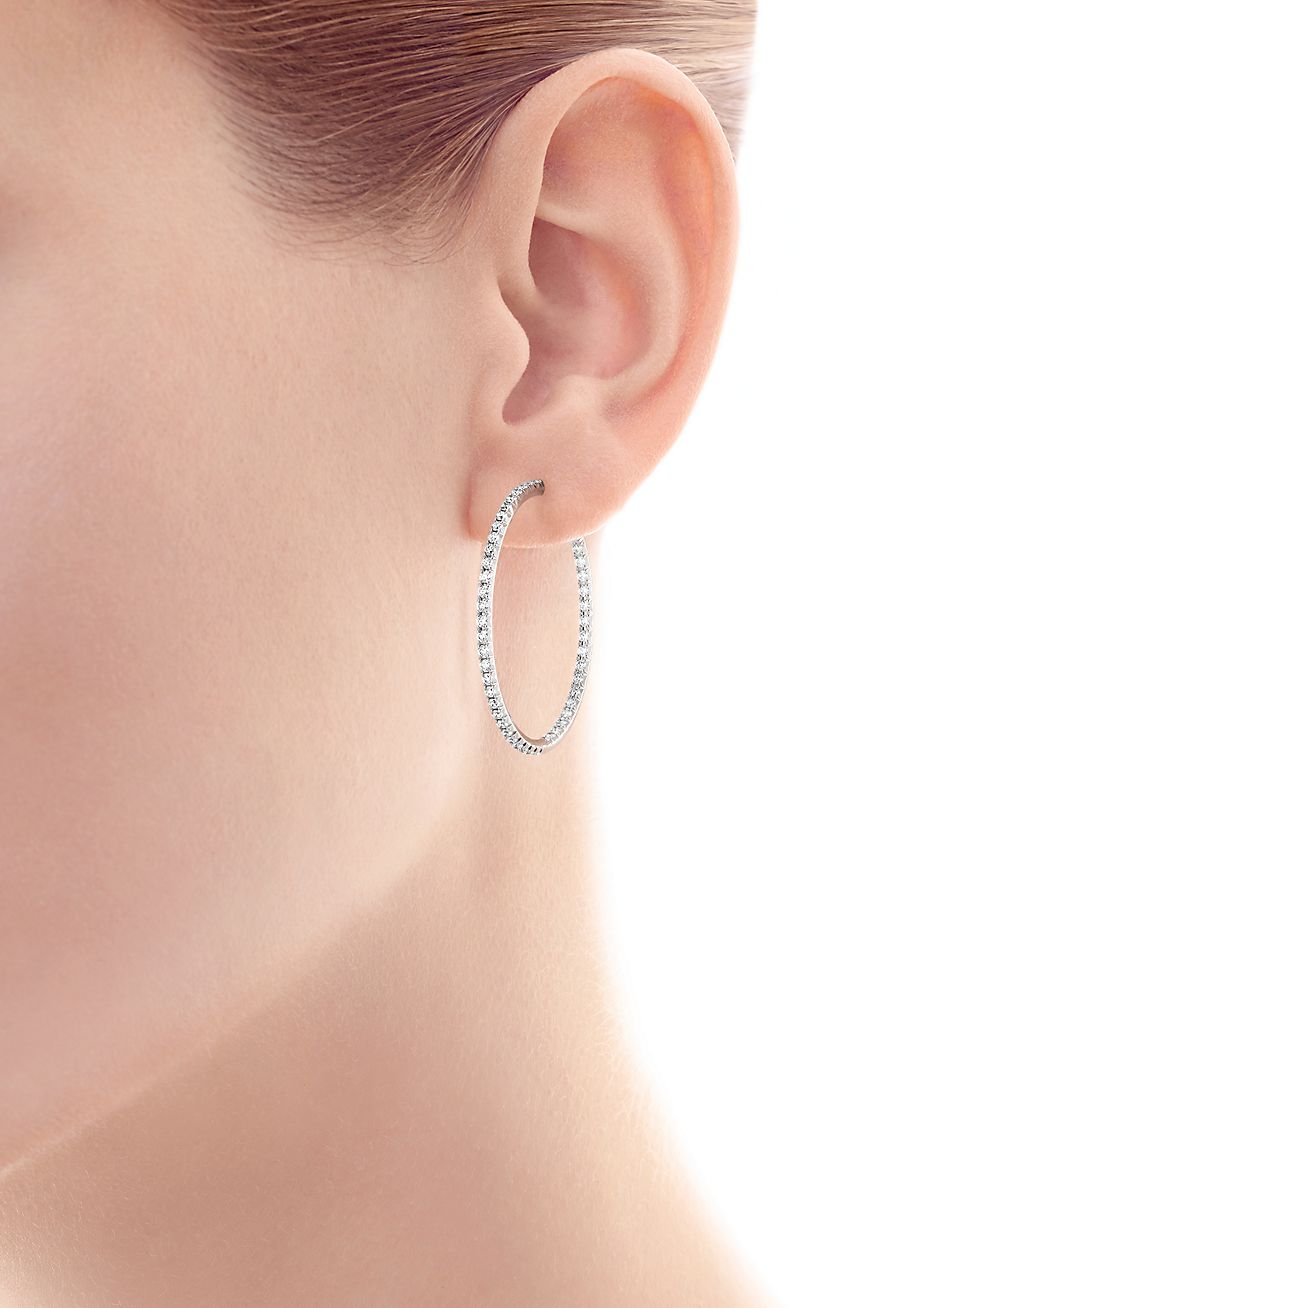 Tiffany Metro hoop earrings in 18k 